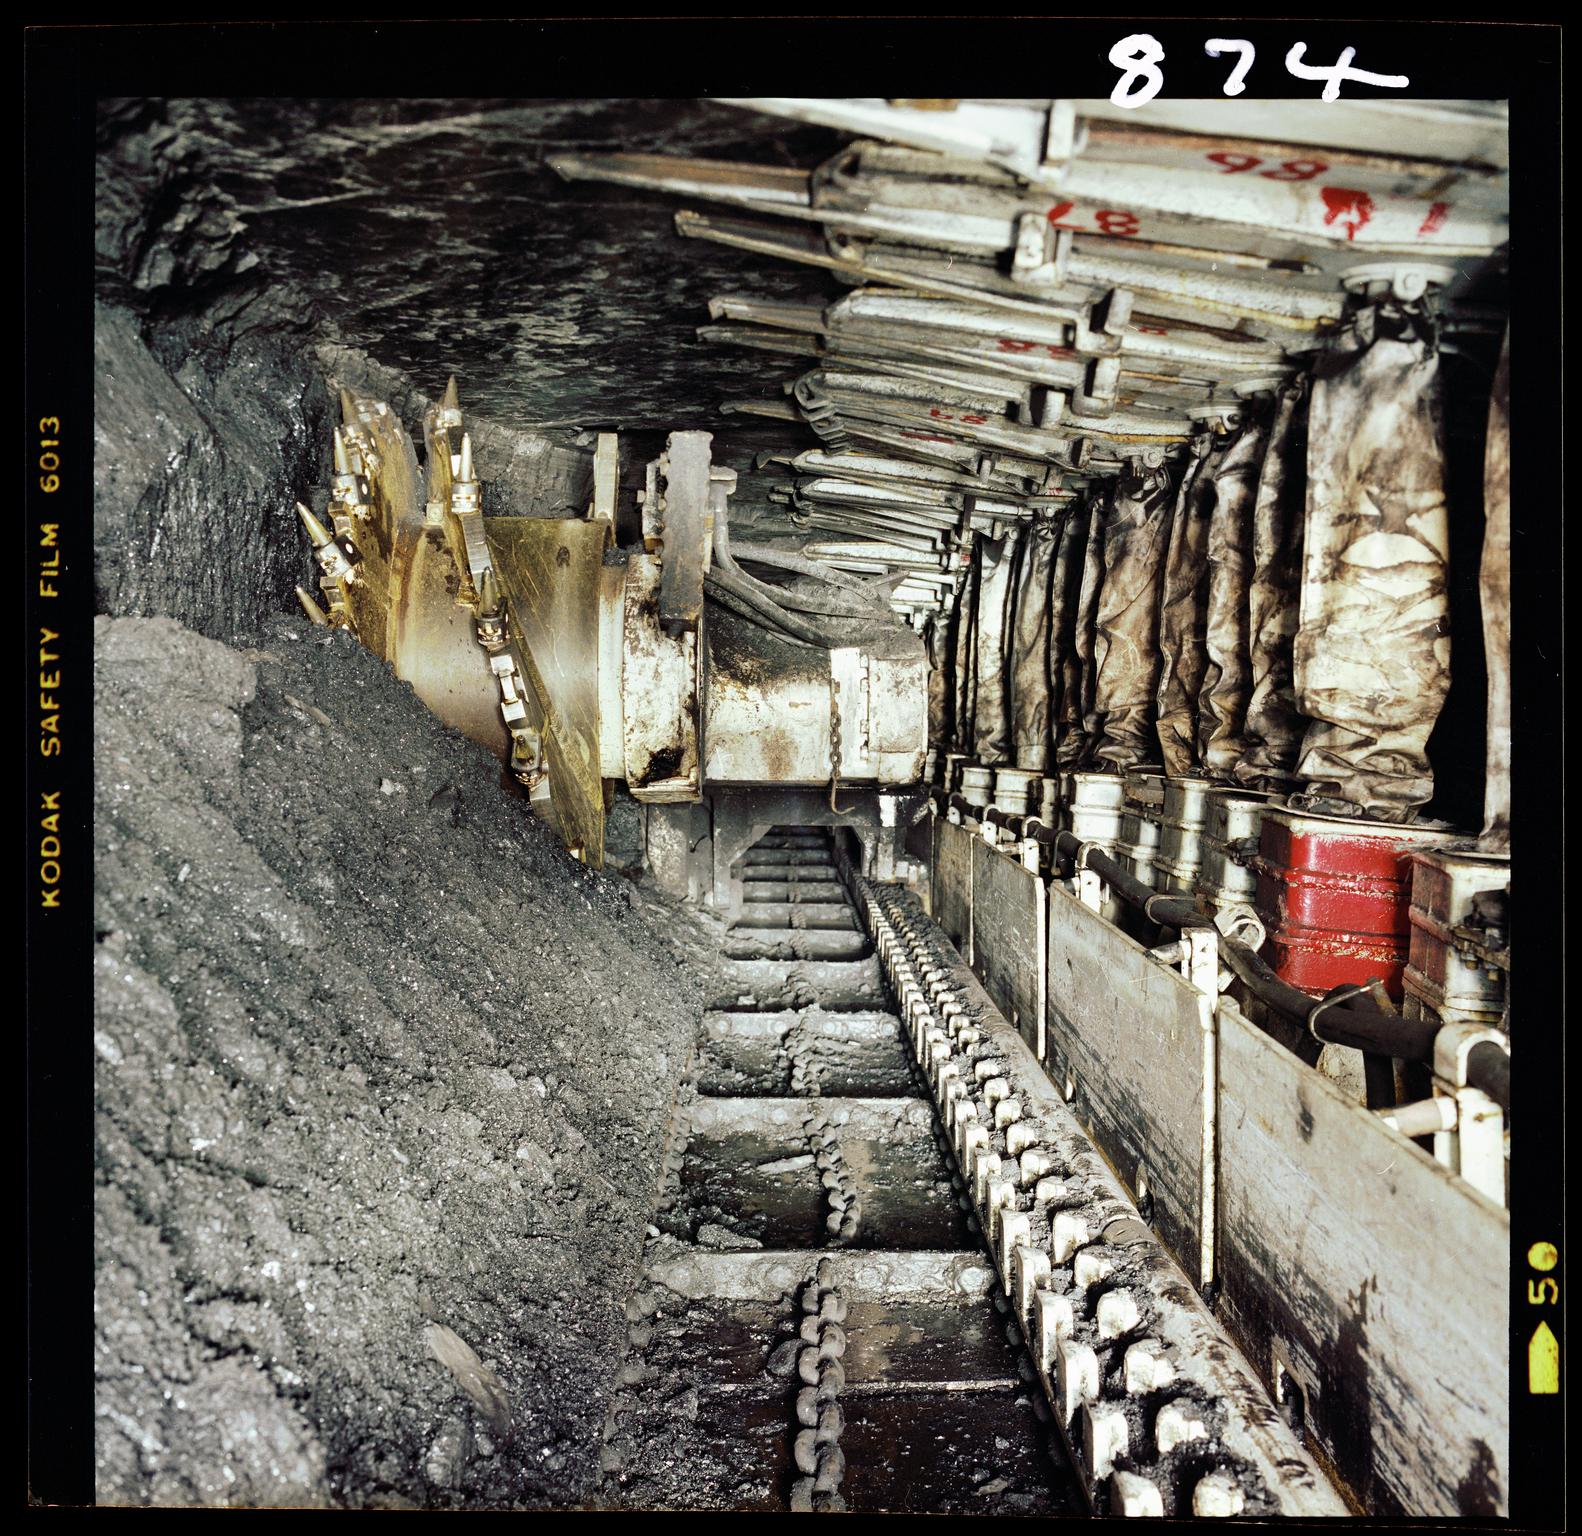 Nantgarw Colliery, film negative